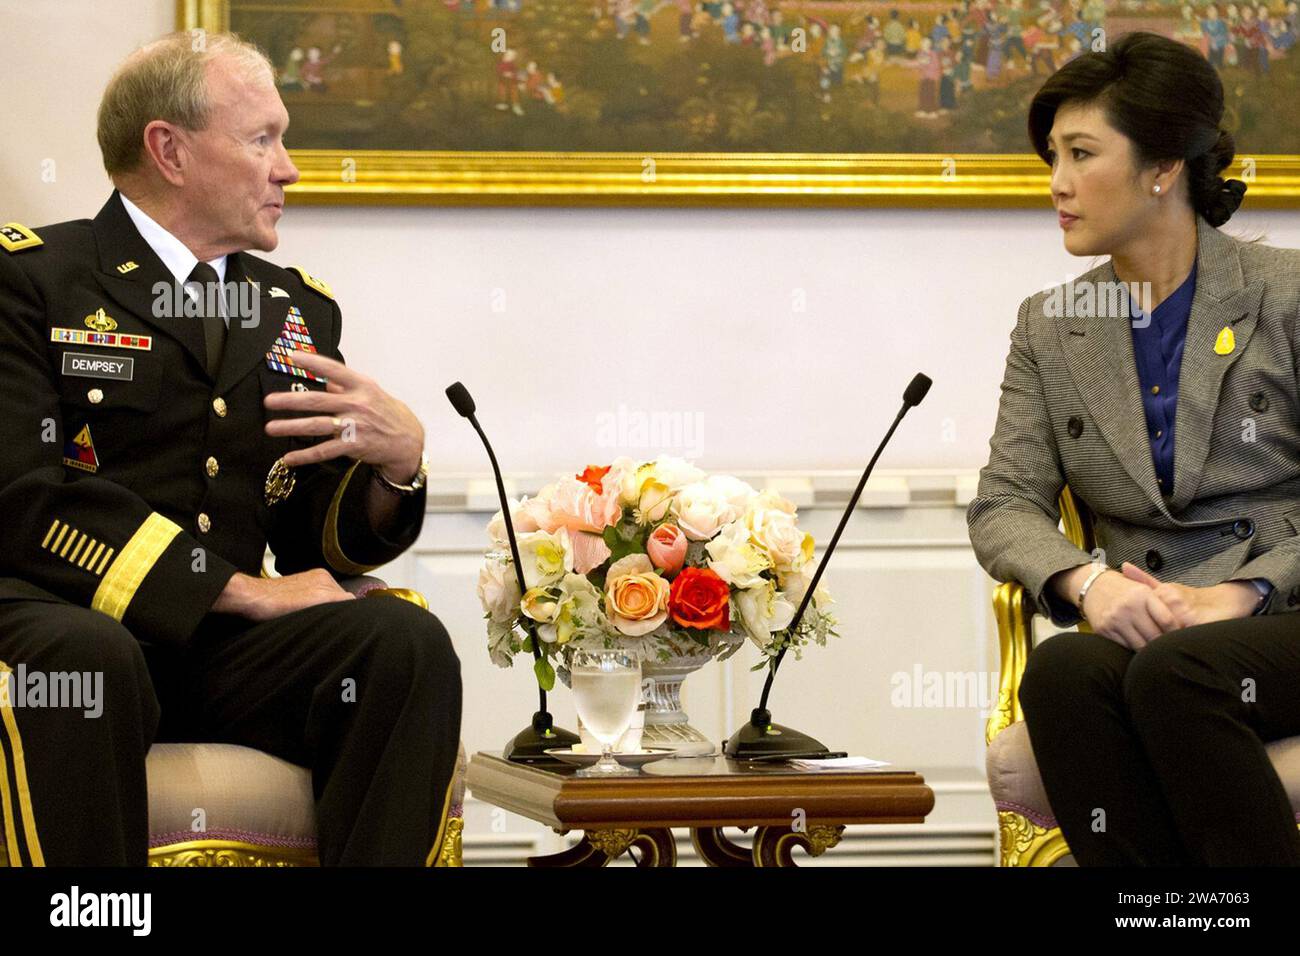 US-Streitkräfte. Der thailändische Premierminister Yingluck Shinawatra trifft am 5. Juni 2012 in Bangkok, Thailand, mit dem Vorsitzenden der gemeinsamen Stabschefs General Martin E. Dempsey zusammen. DOD Foto von D. Myles Cullen Stockfoto